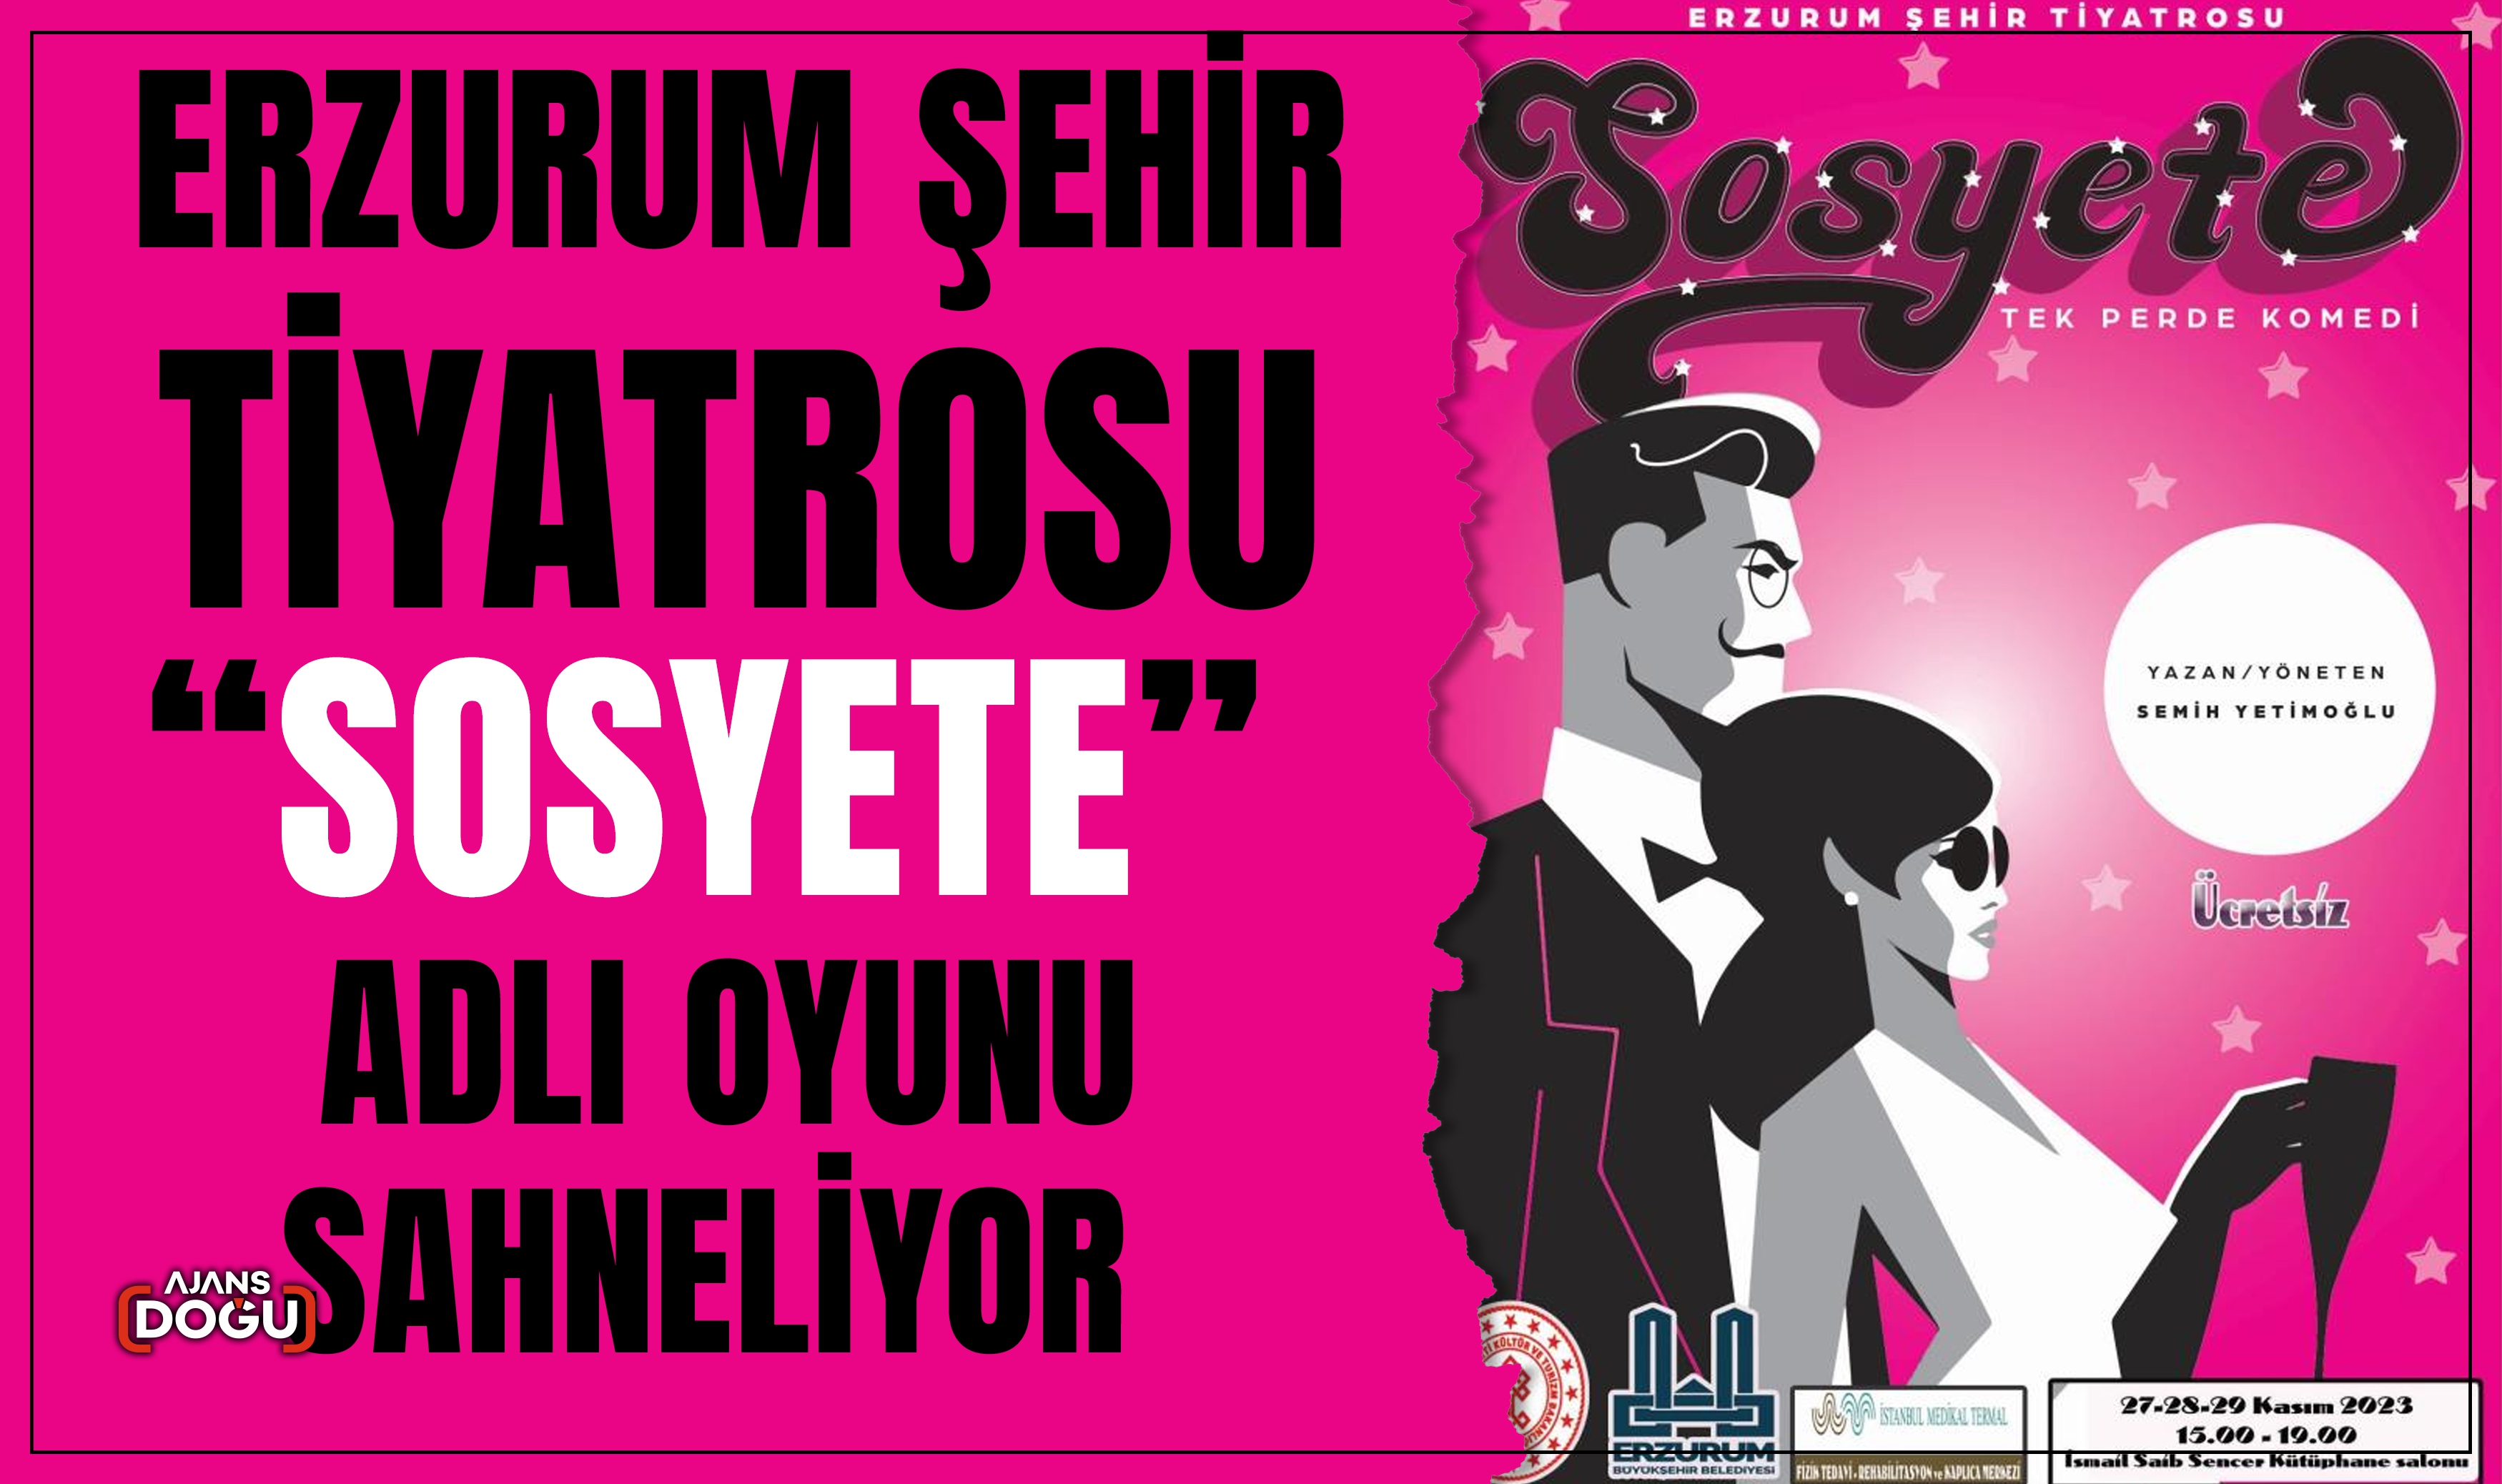 Erzurum Şehir Tiyatrosu “Sosyete” adlı oyunu sahneliyor